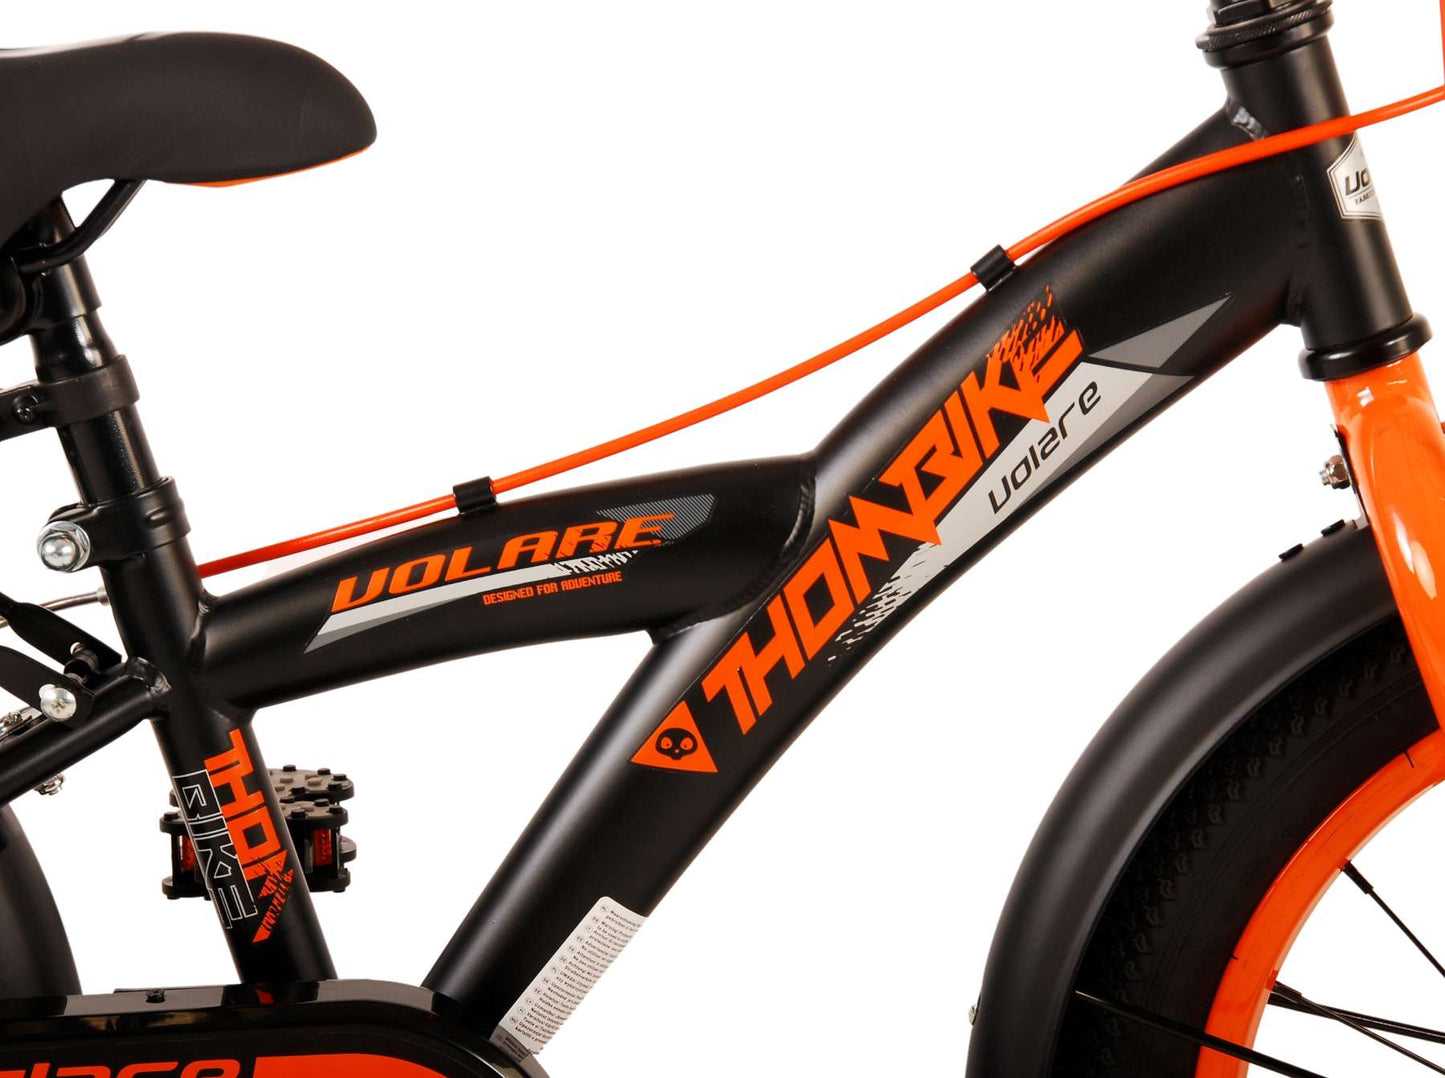 Bicicleta para niños Volare Thombike - Niños - 16 pulgadas - Naranja negra - Dos frenos de mano